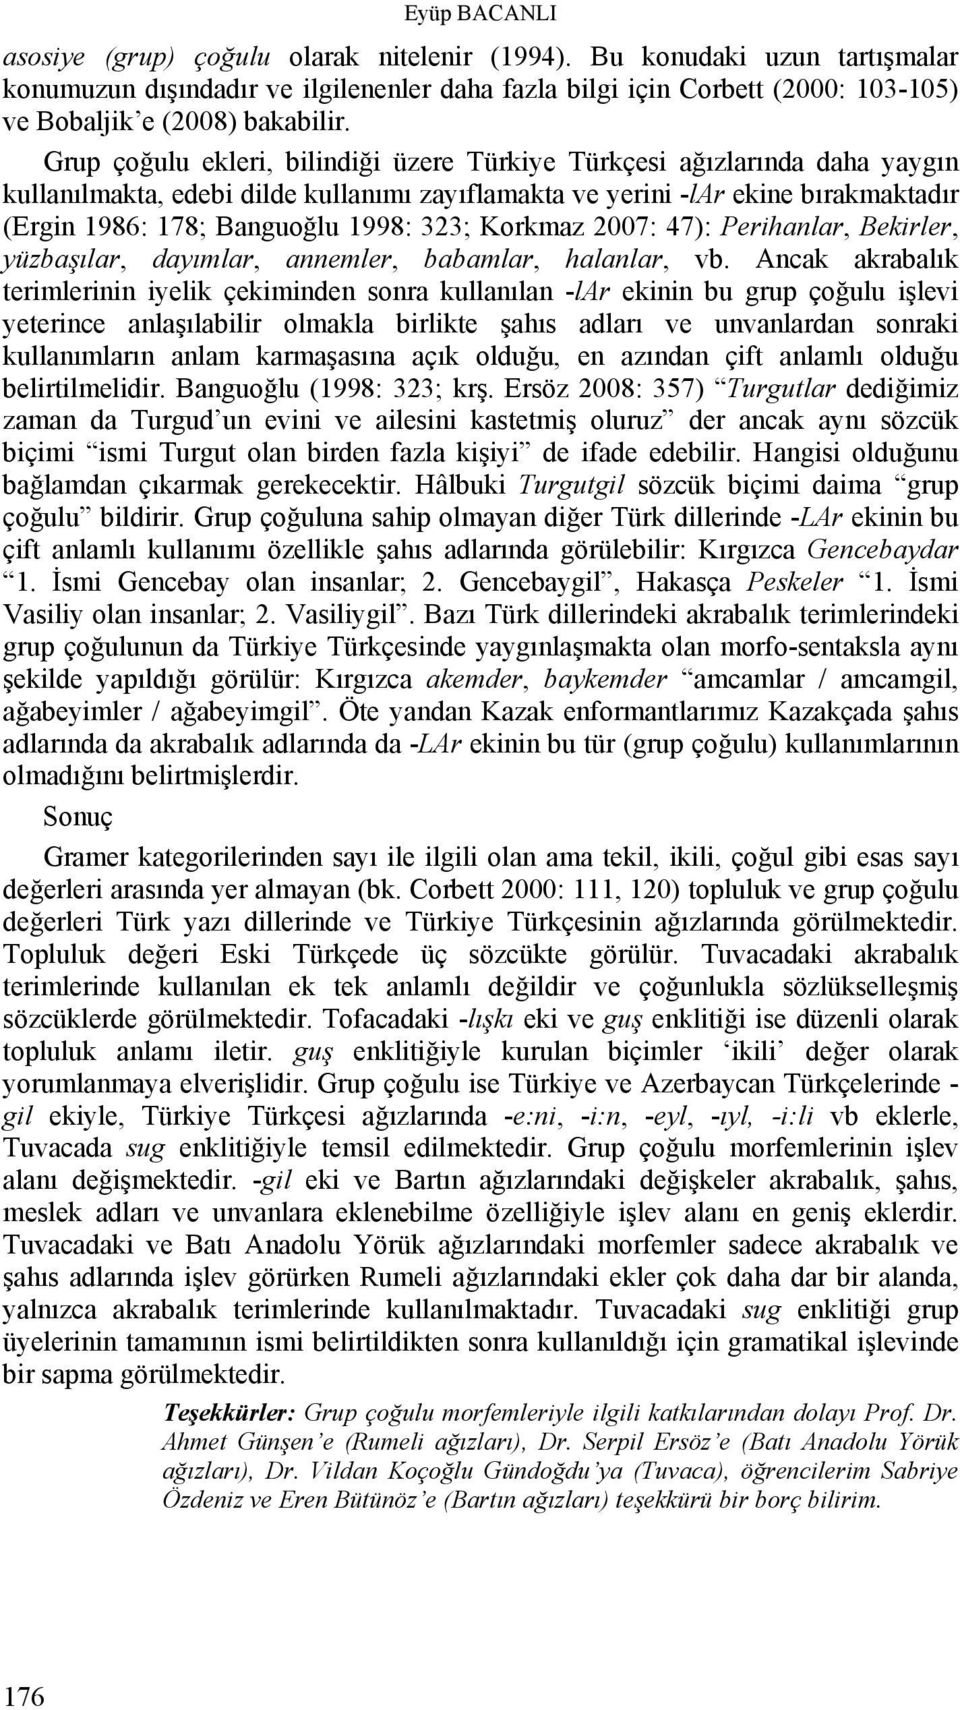 Grup çoğulu ekleri, bilindiği üzere Türkiye Türkçesi ağızlarında daha yaygın kullanılmakta, edebi dilde kullanımı zayıflamakta ve yerini -lar ekine bırakmaktadır (Ergin 1986: 178; Banguoğlu 1998: